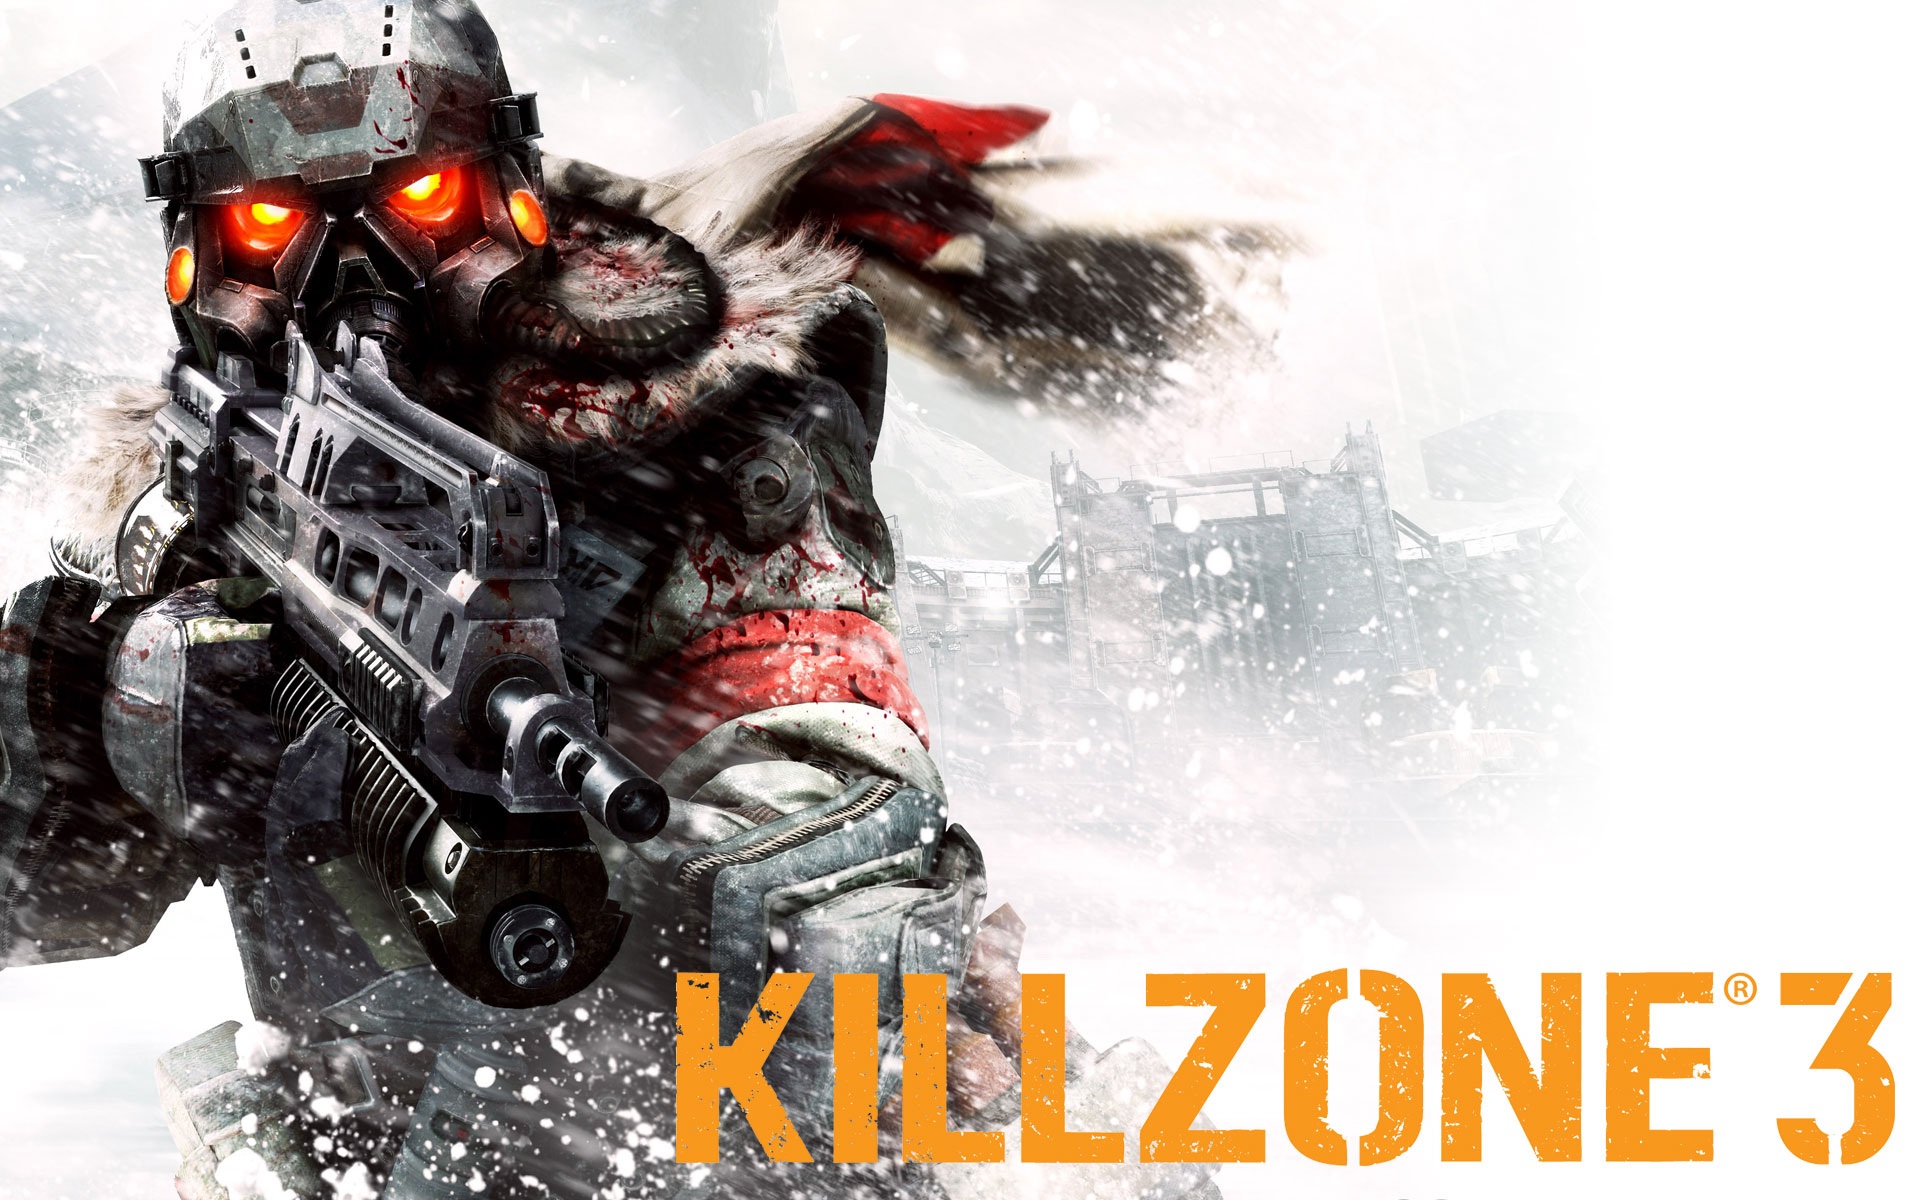 killzone pcsx2 compatibility